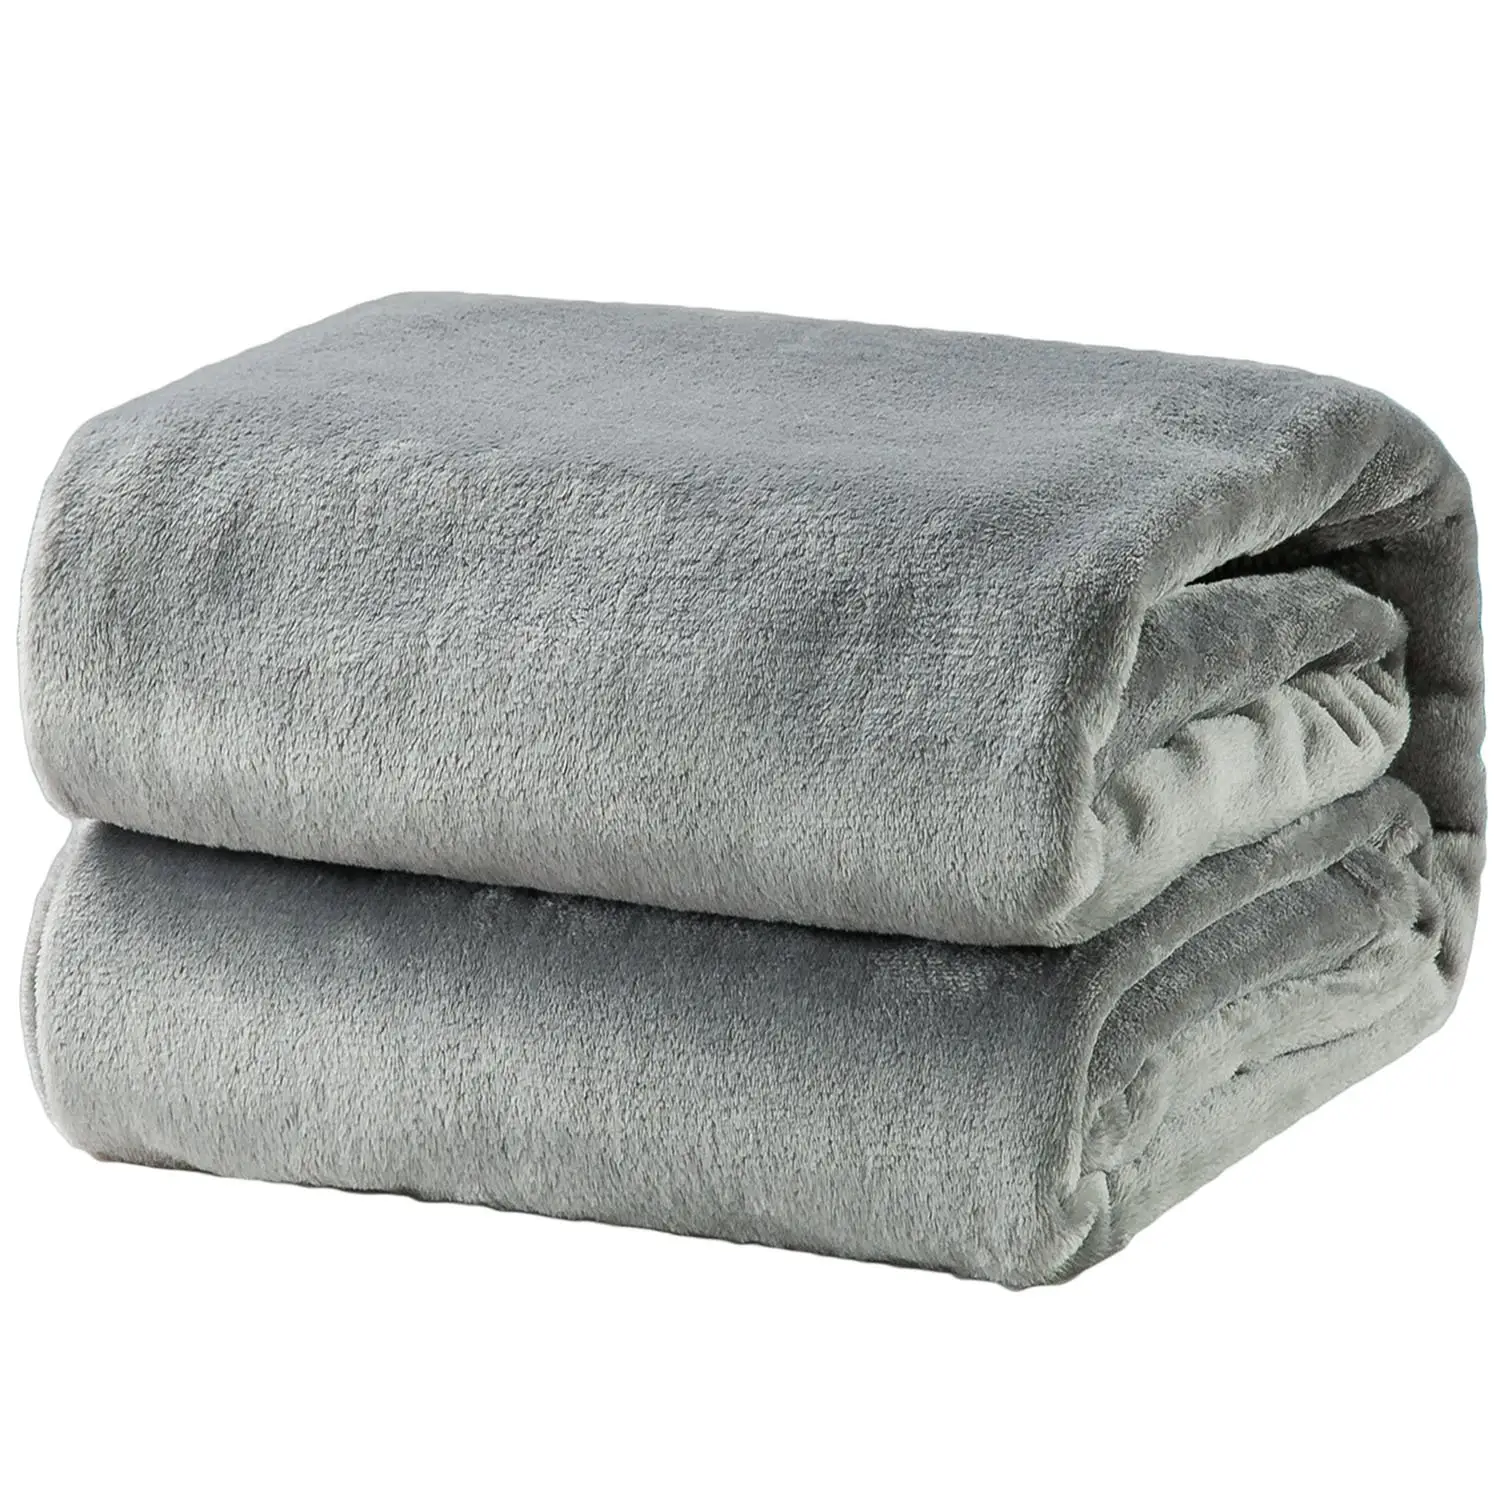 Corps en laine couvertures pour hiver personnalisé bébé couvertures d'ouatine en gros jeter couverture en laine